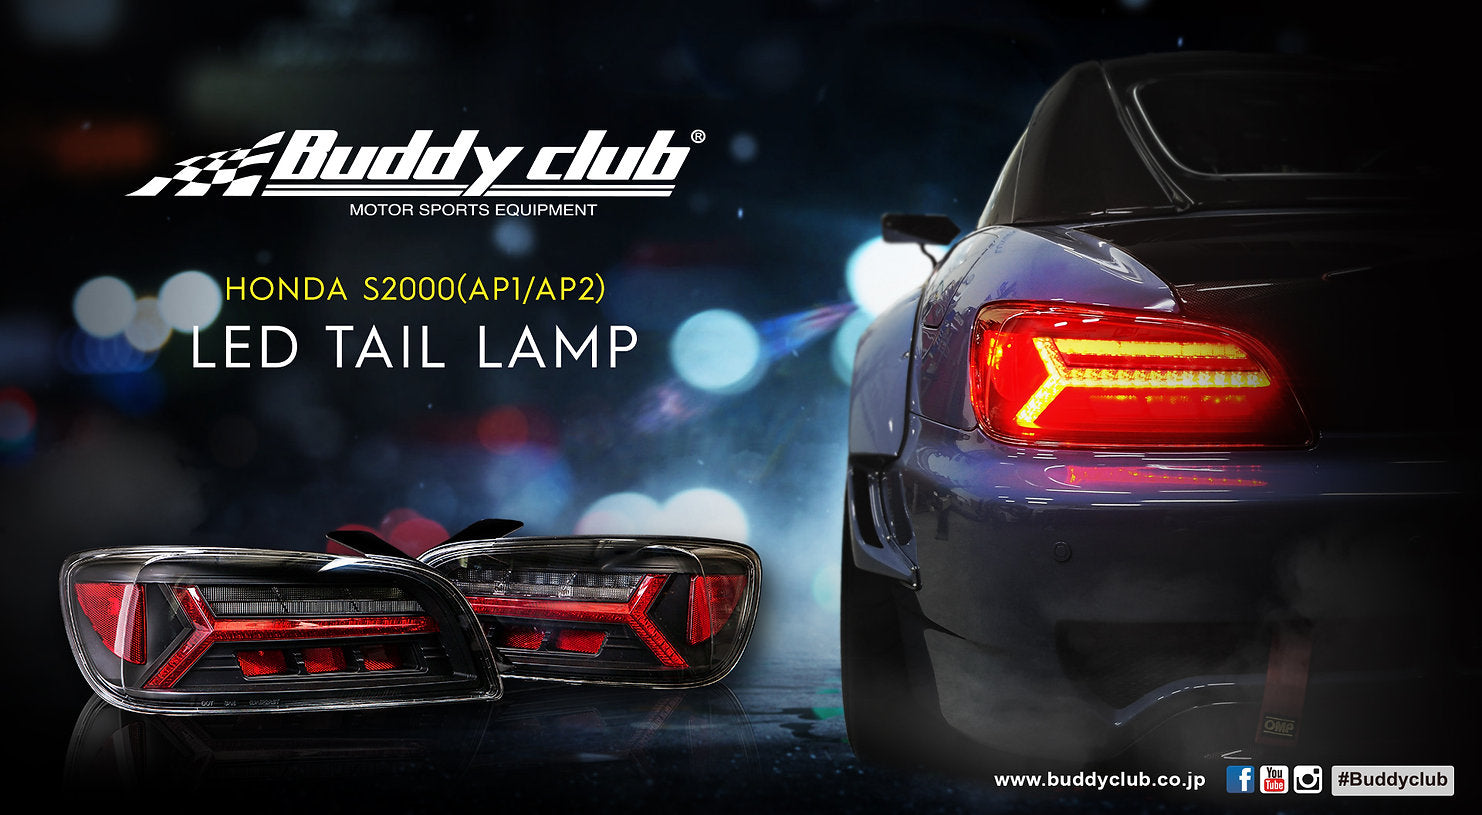 BUDDY CLUB LED TAIL LAMP KIT FOR HONDA S2000 AP1 BUDDYCLUB-00003